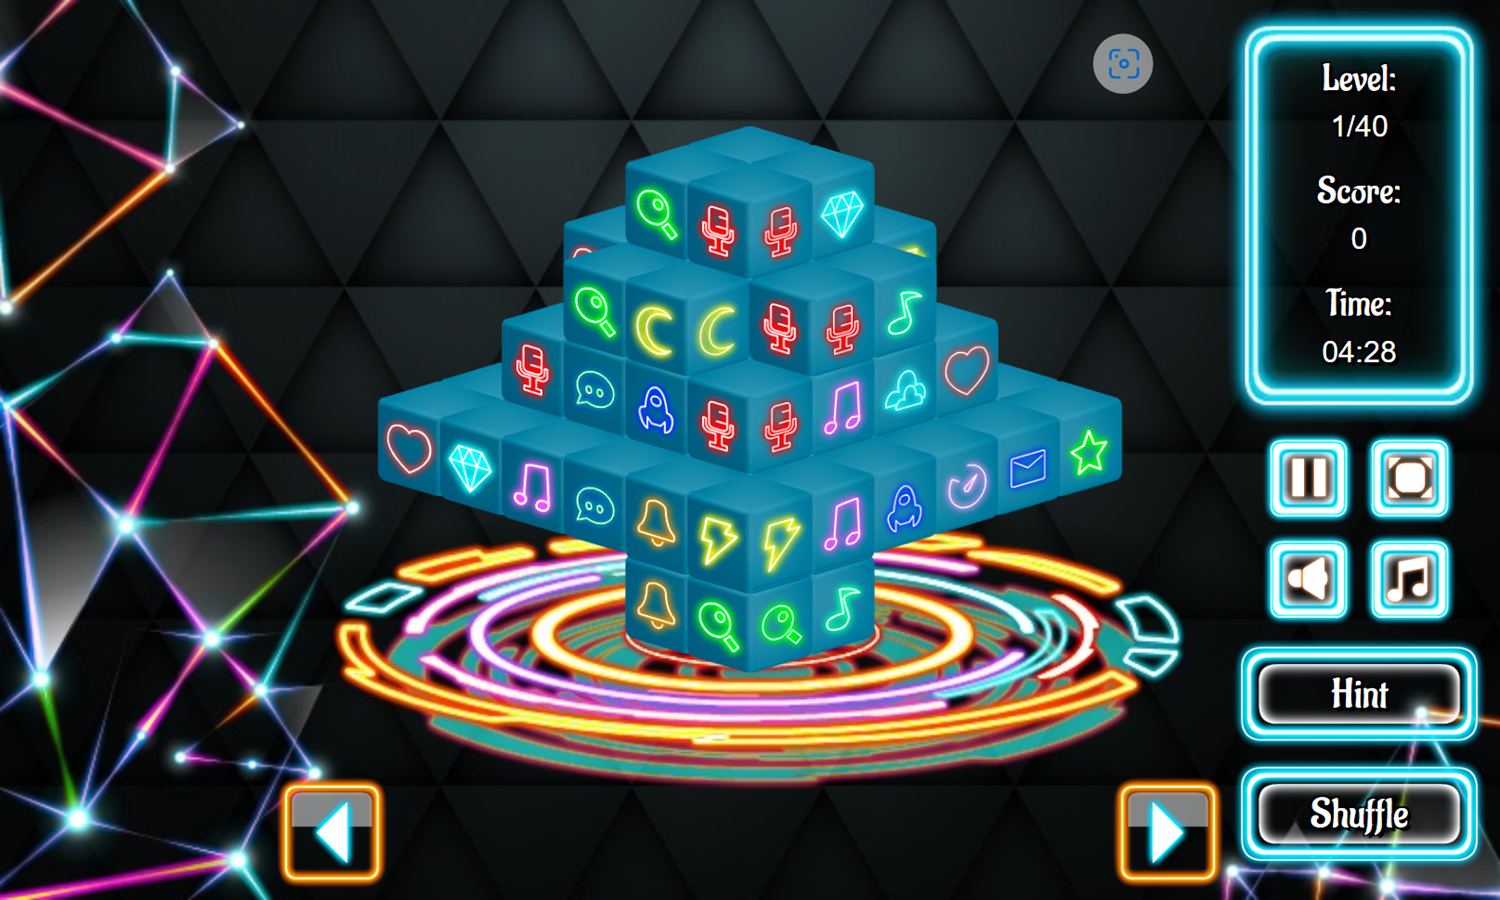 Neonjong 3D Game Level Start Screenshot.